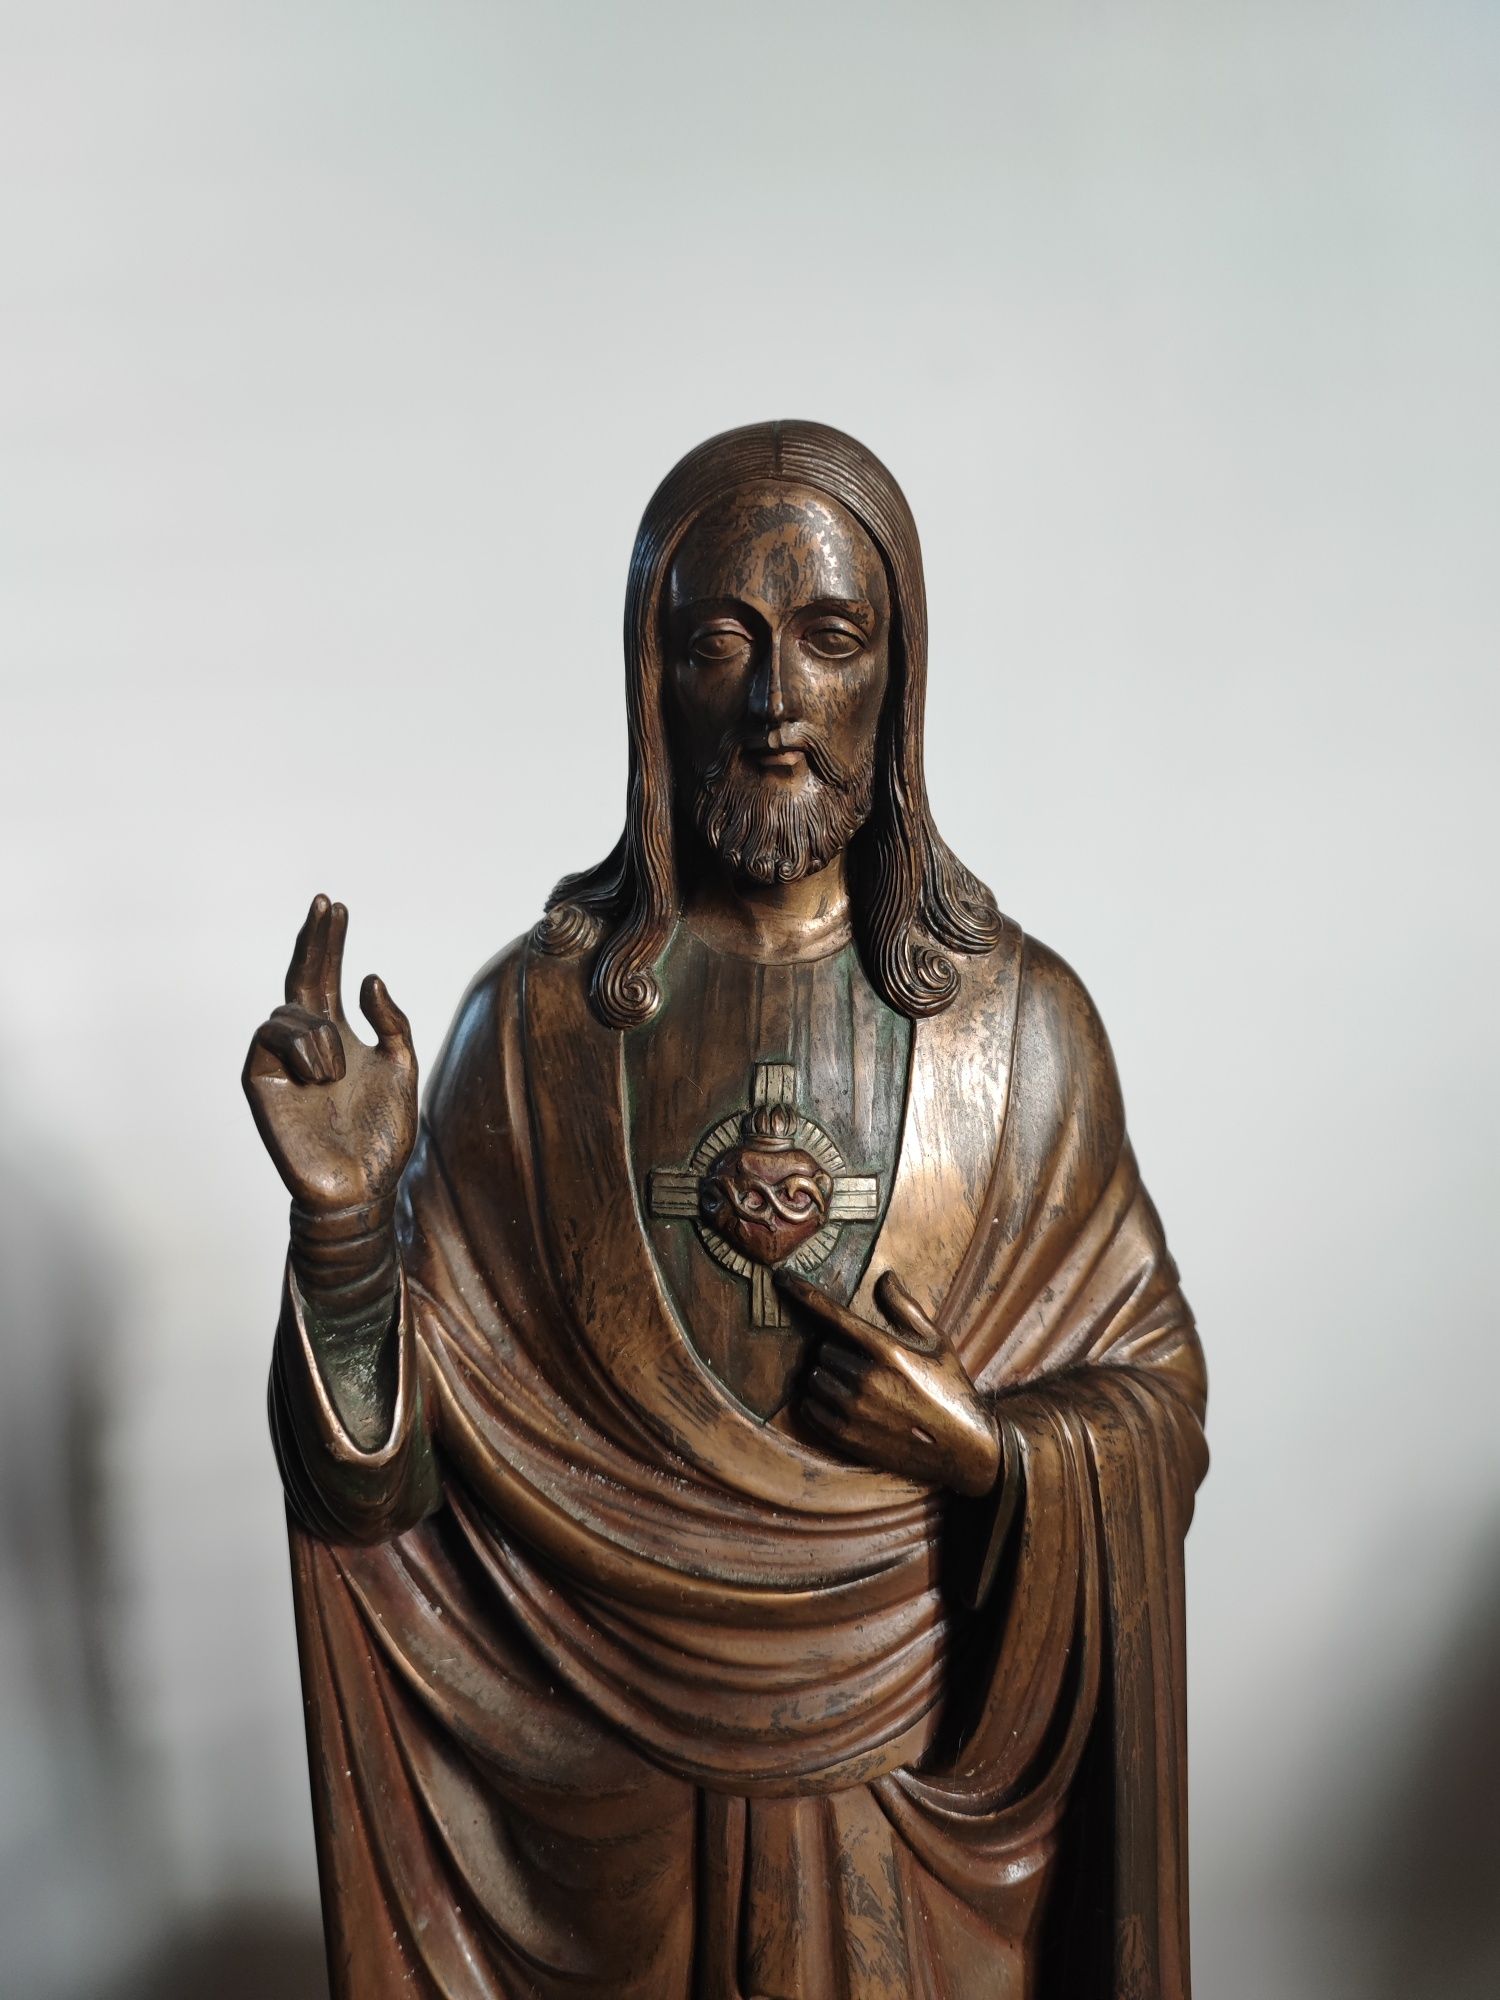 Jezus Chrystus figura z brązu duża